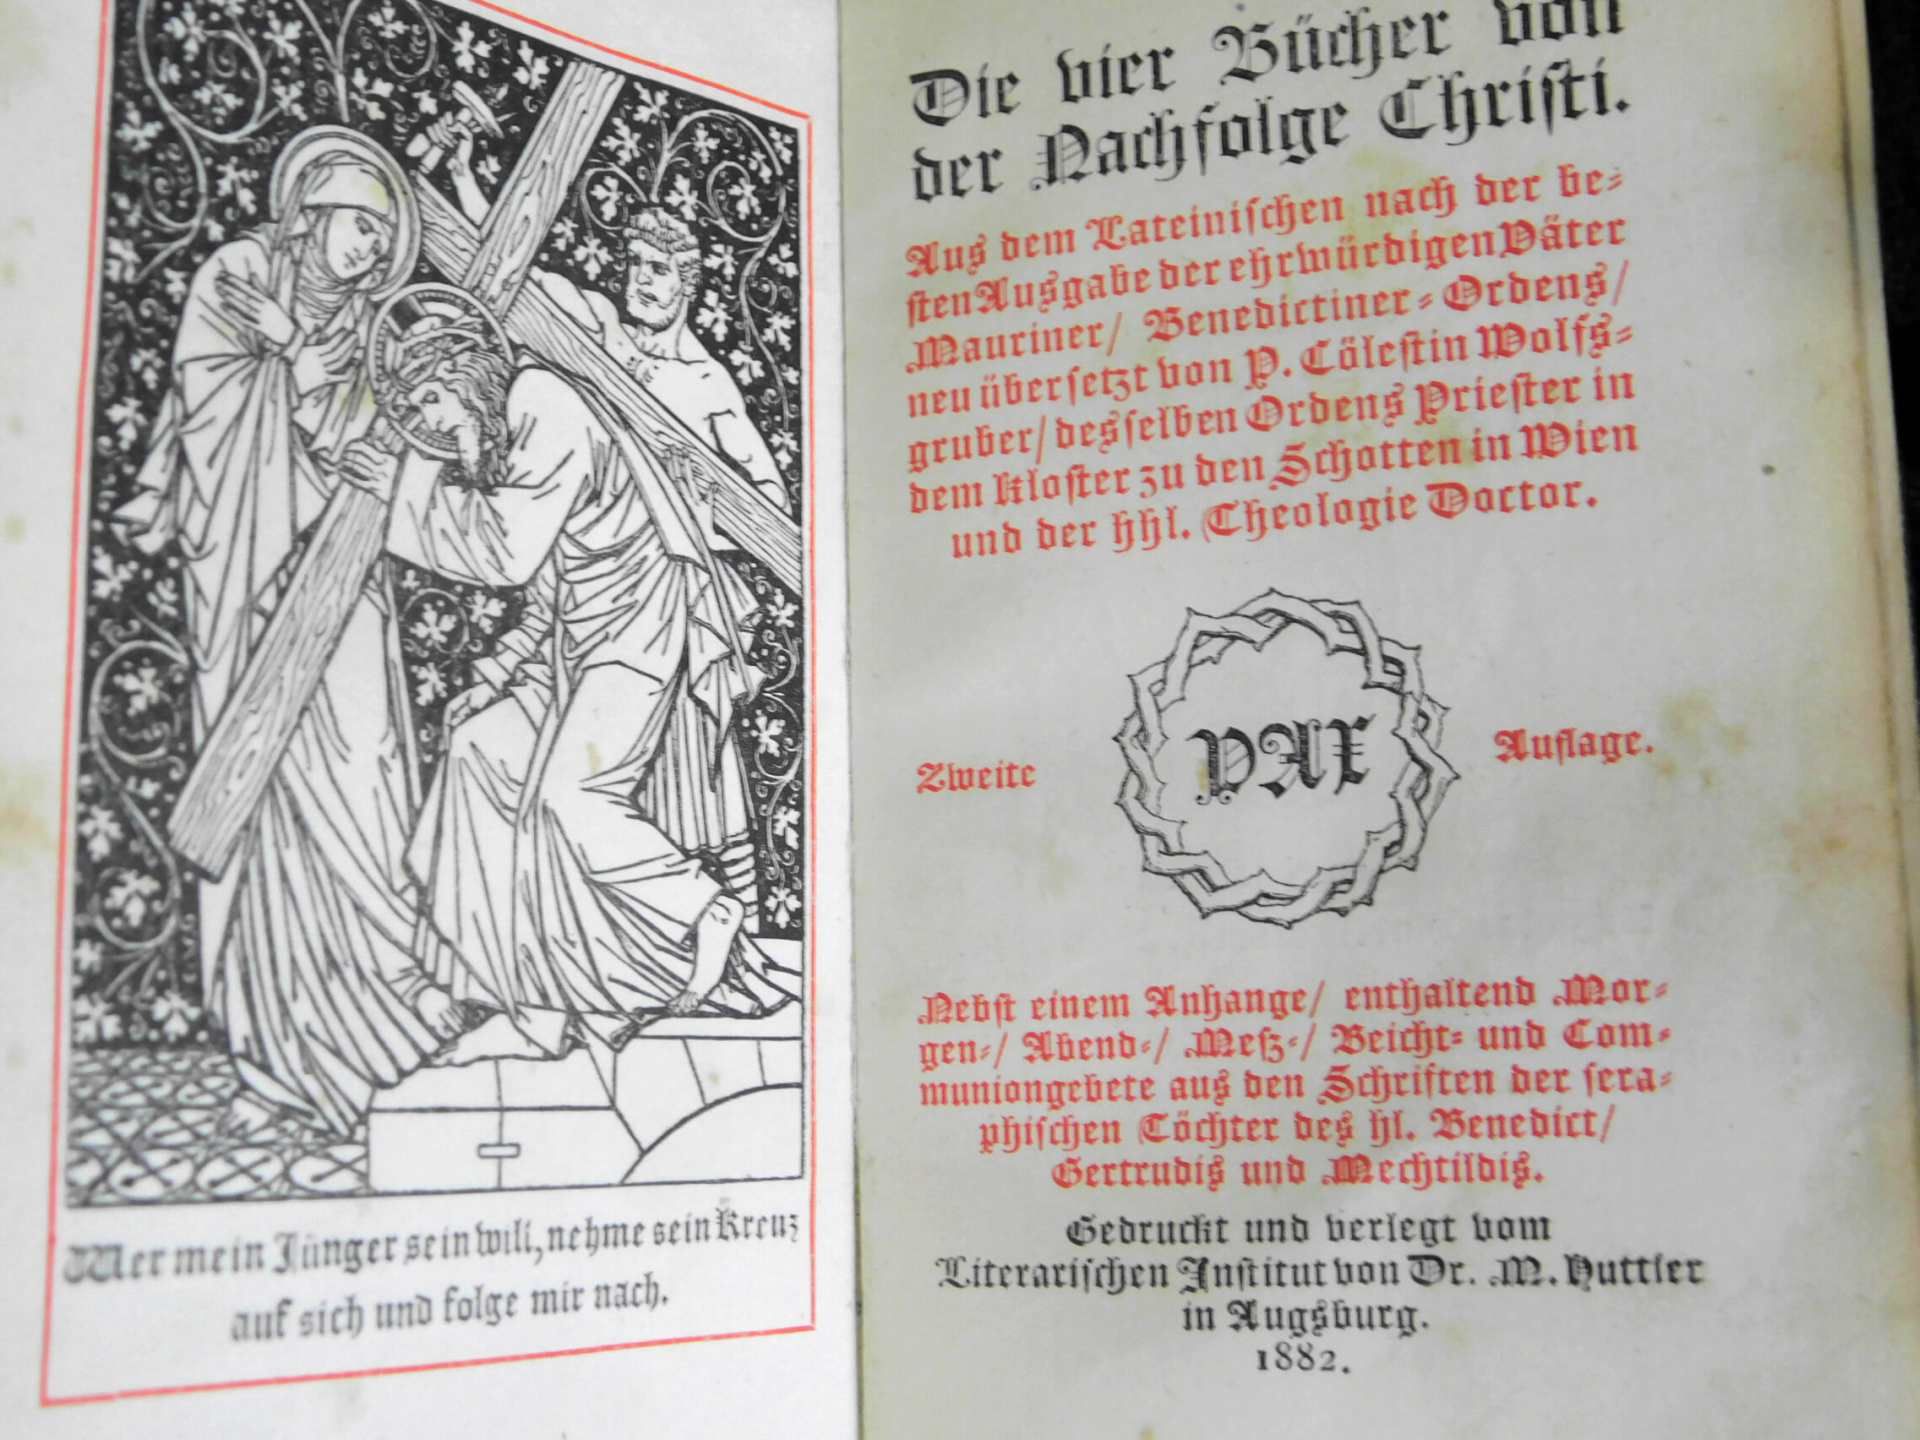 Buch "Nachfolge Christi", Druck und Verlag literarisches Institut Dr.M. Nuttier, Augsburg 1882, - Image 3 of 4